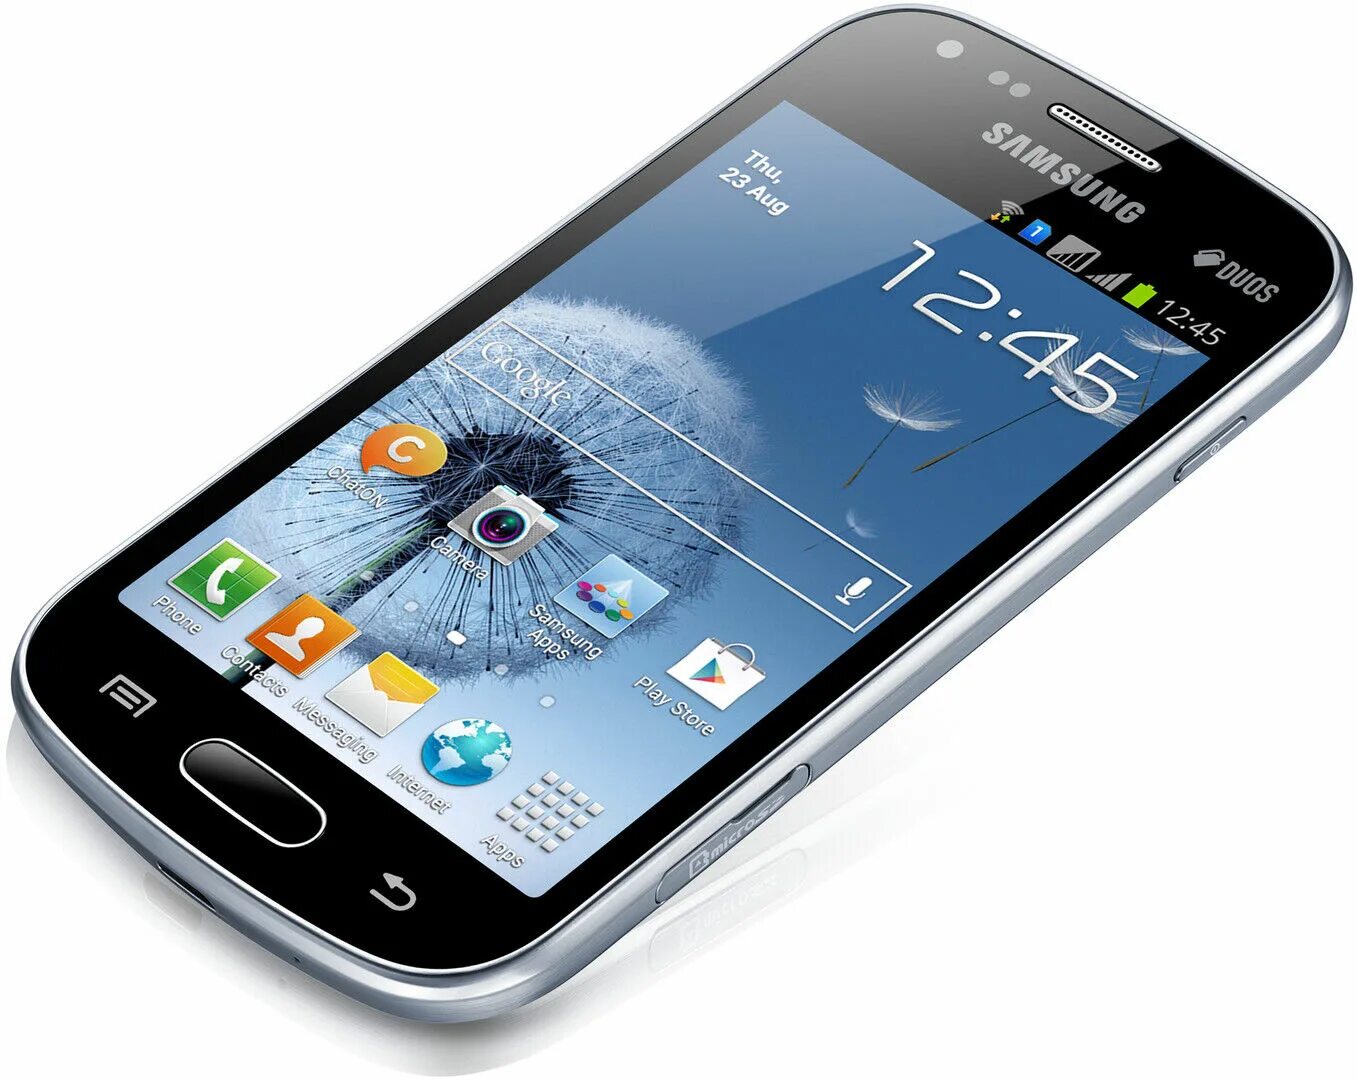 Galaxy s 25. Samsung Galaxy s7562 Duos. Samsung Galaxy trend gt-s7562. Galaxy s Duos gt-s7562. Samsung Galaxy 7562 Duos.